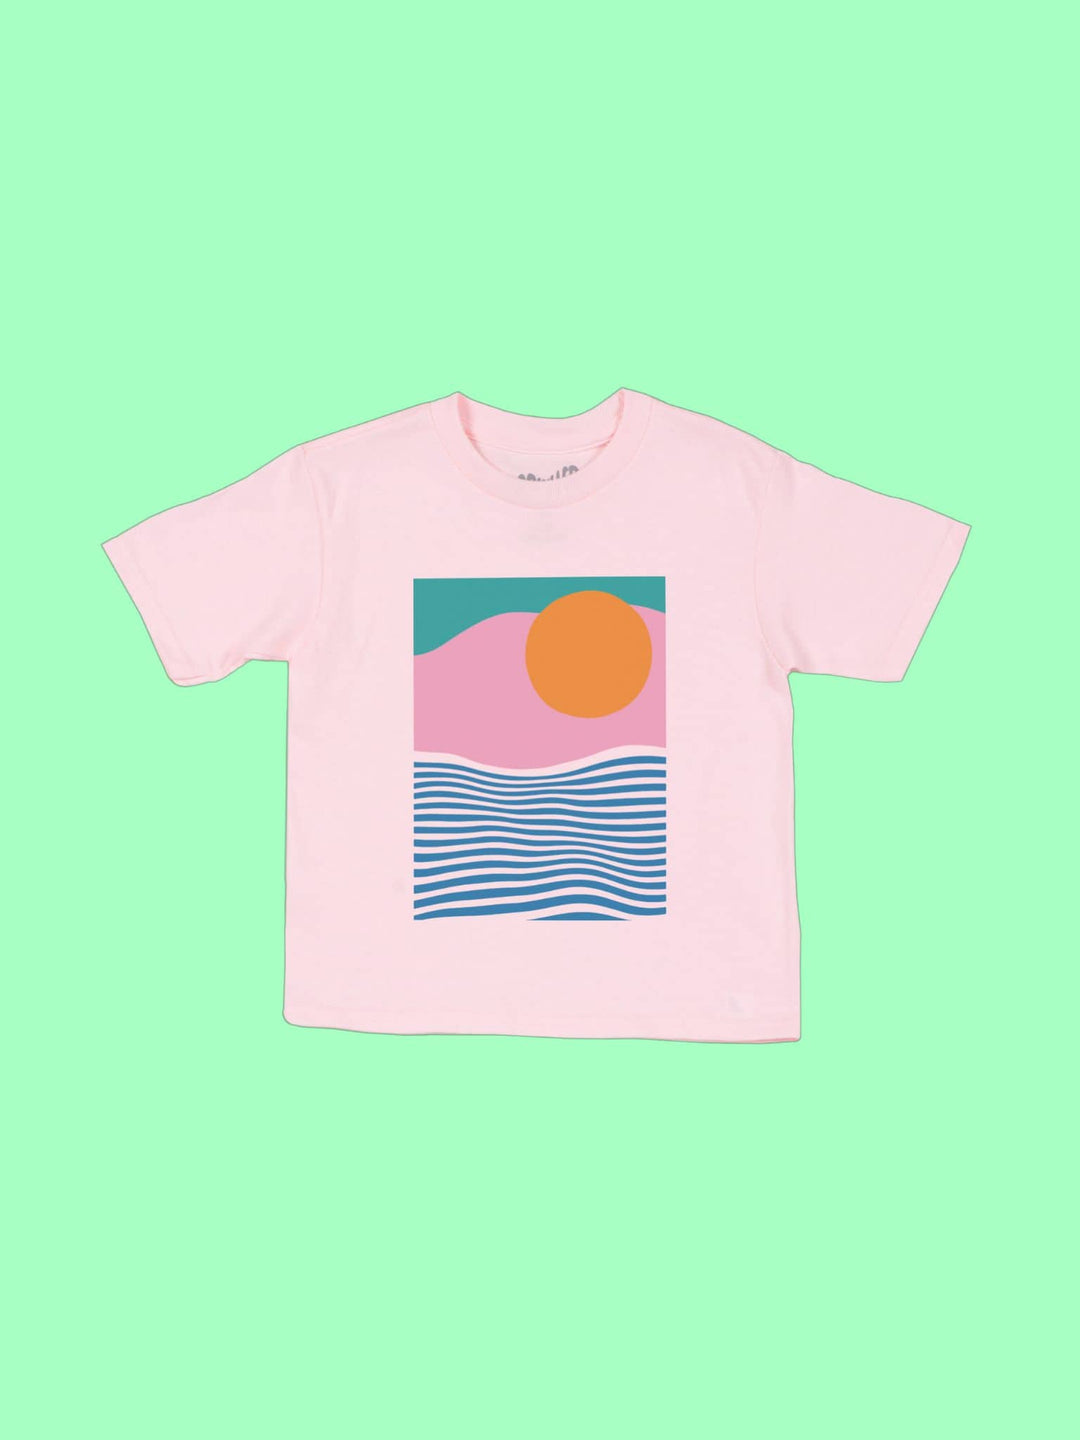 Vaporwave Sunrise Kid's T-shirt